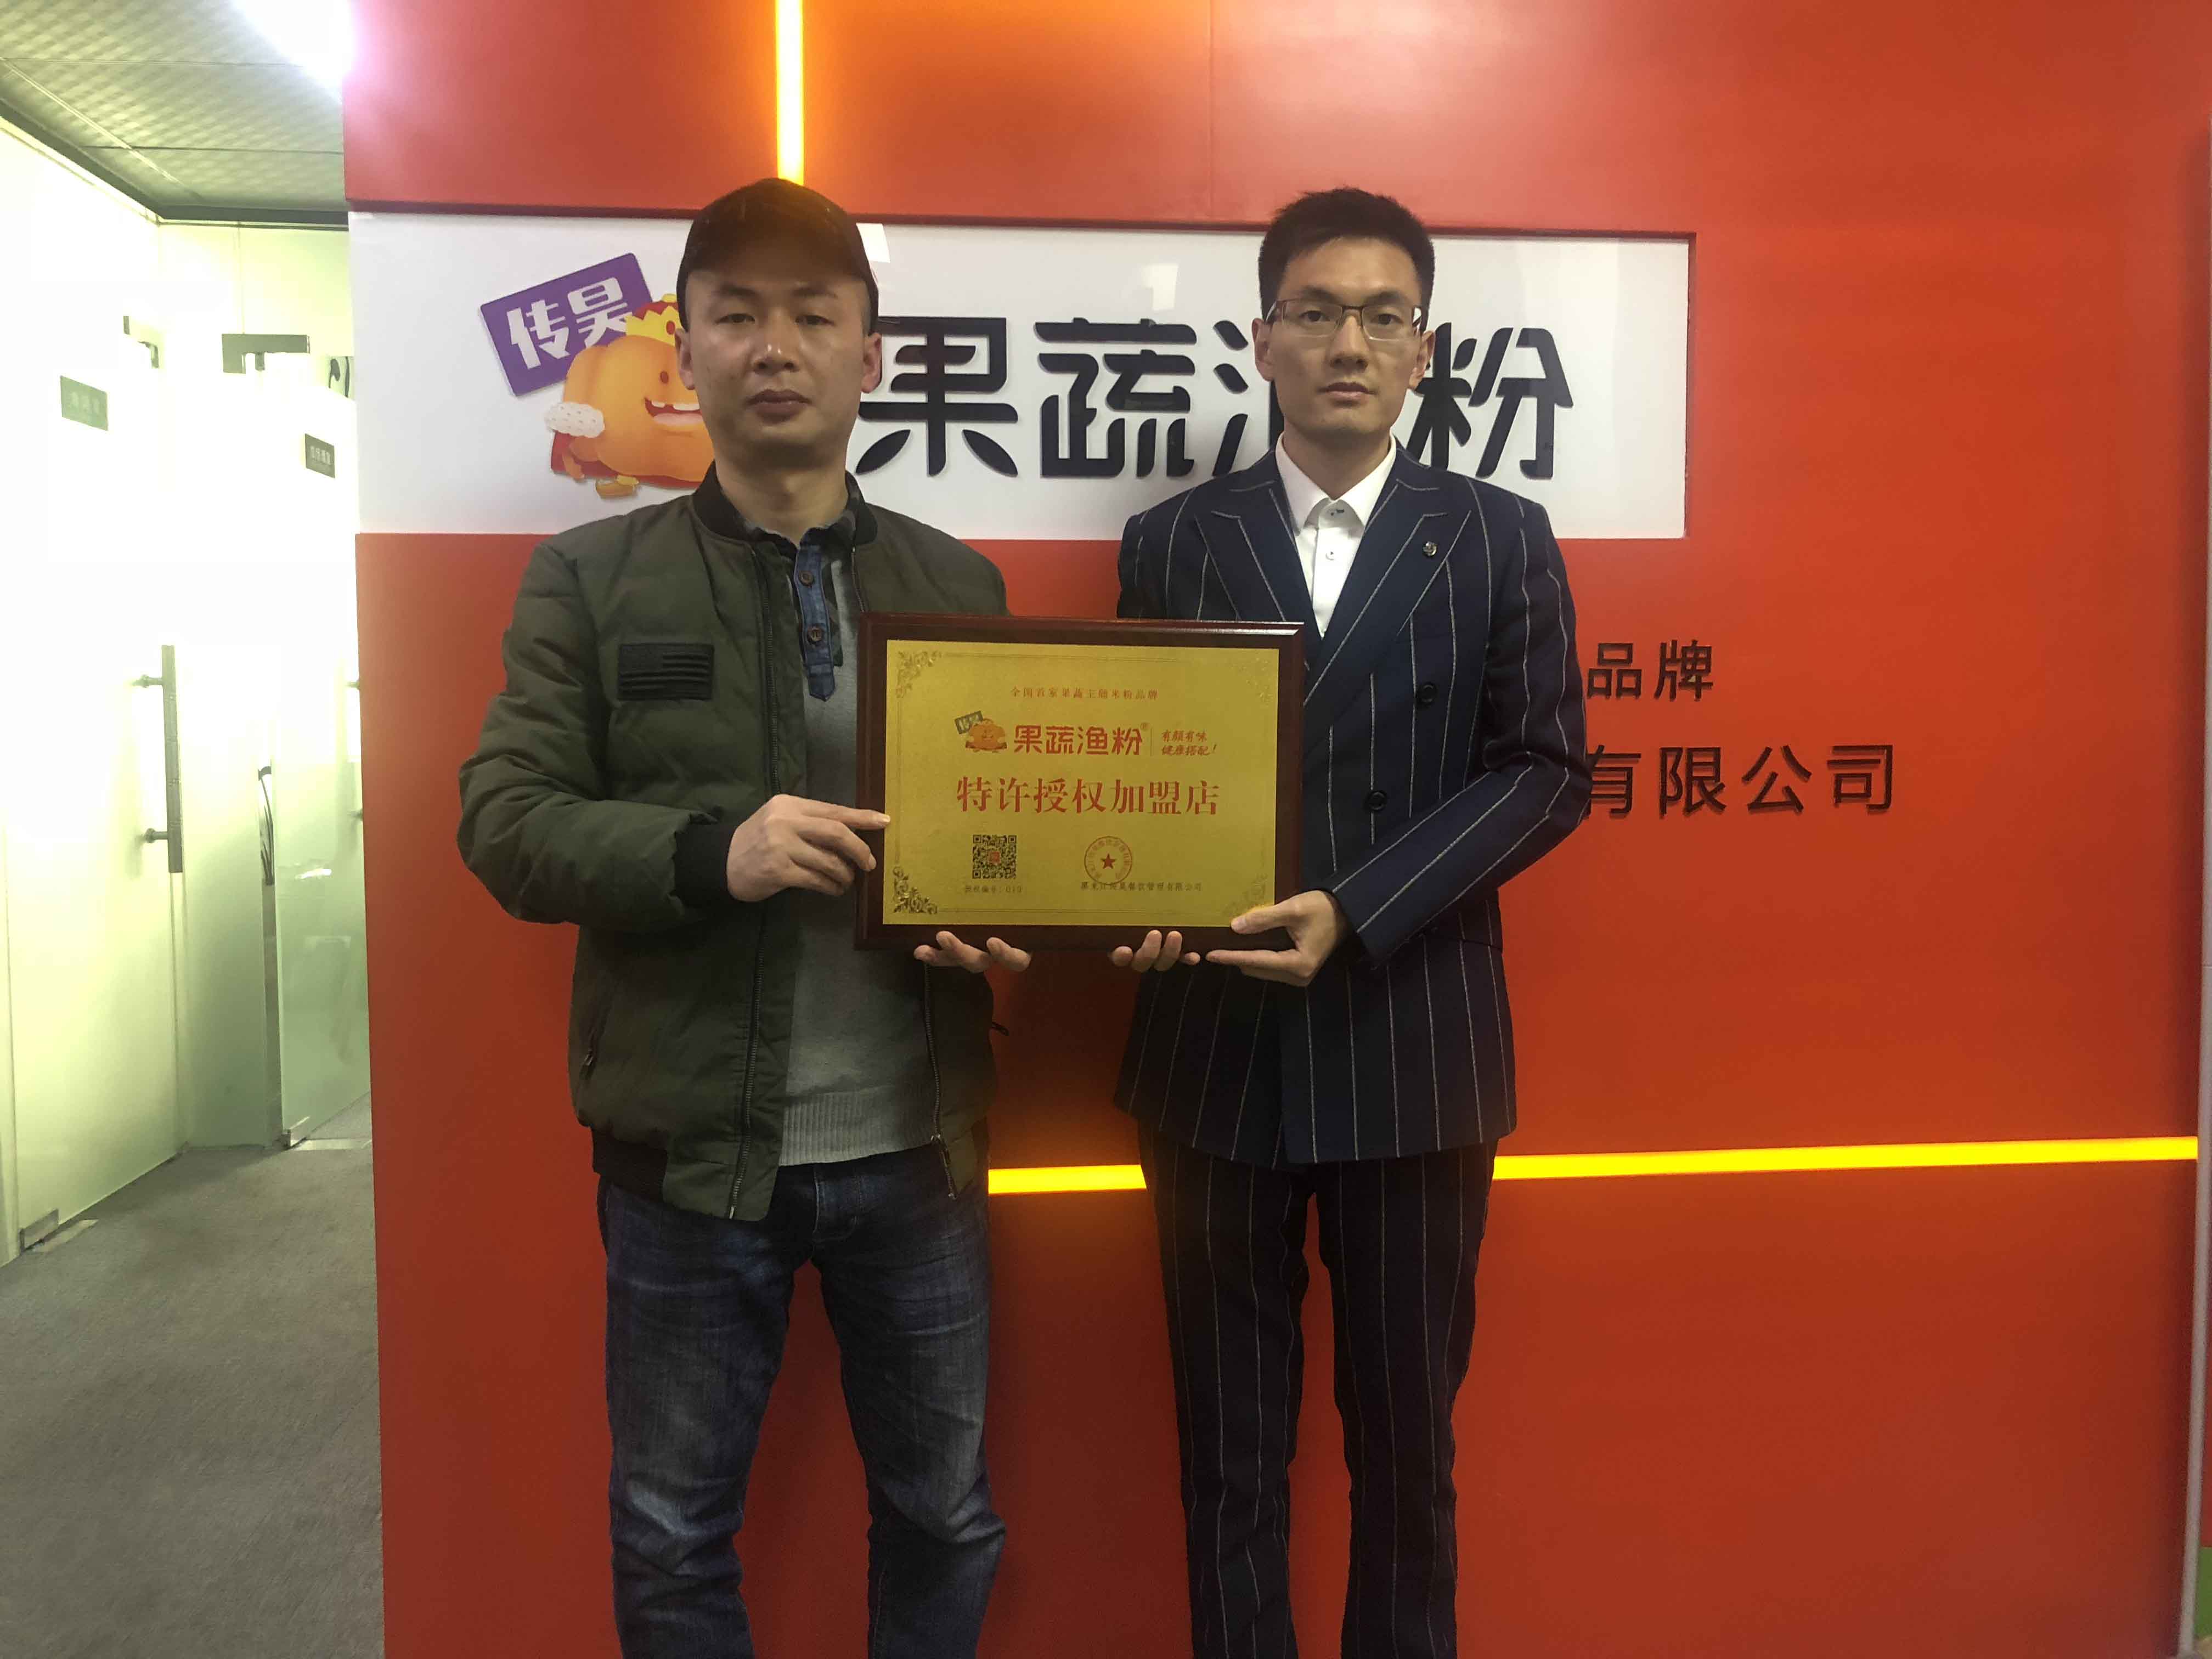 恭喜来自重庆市的罗总签约果蔬渔粉